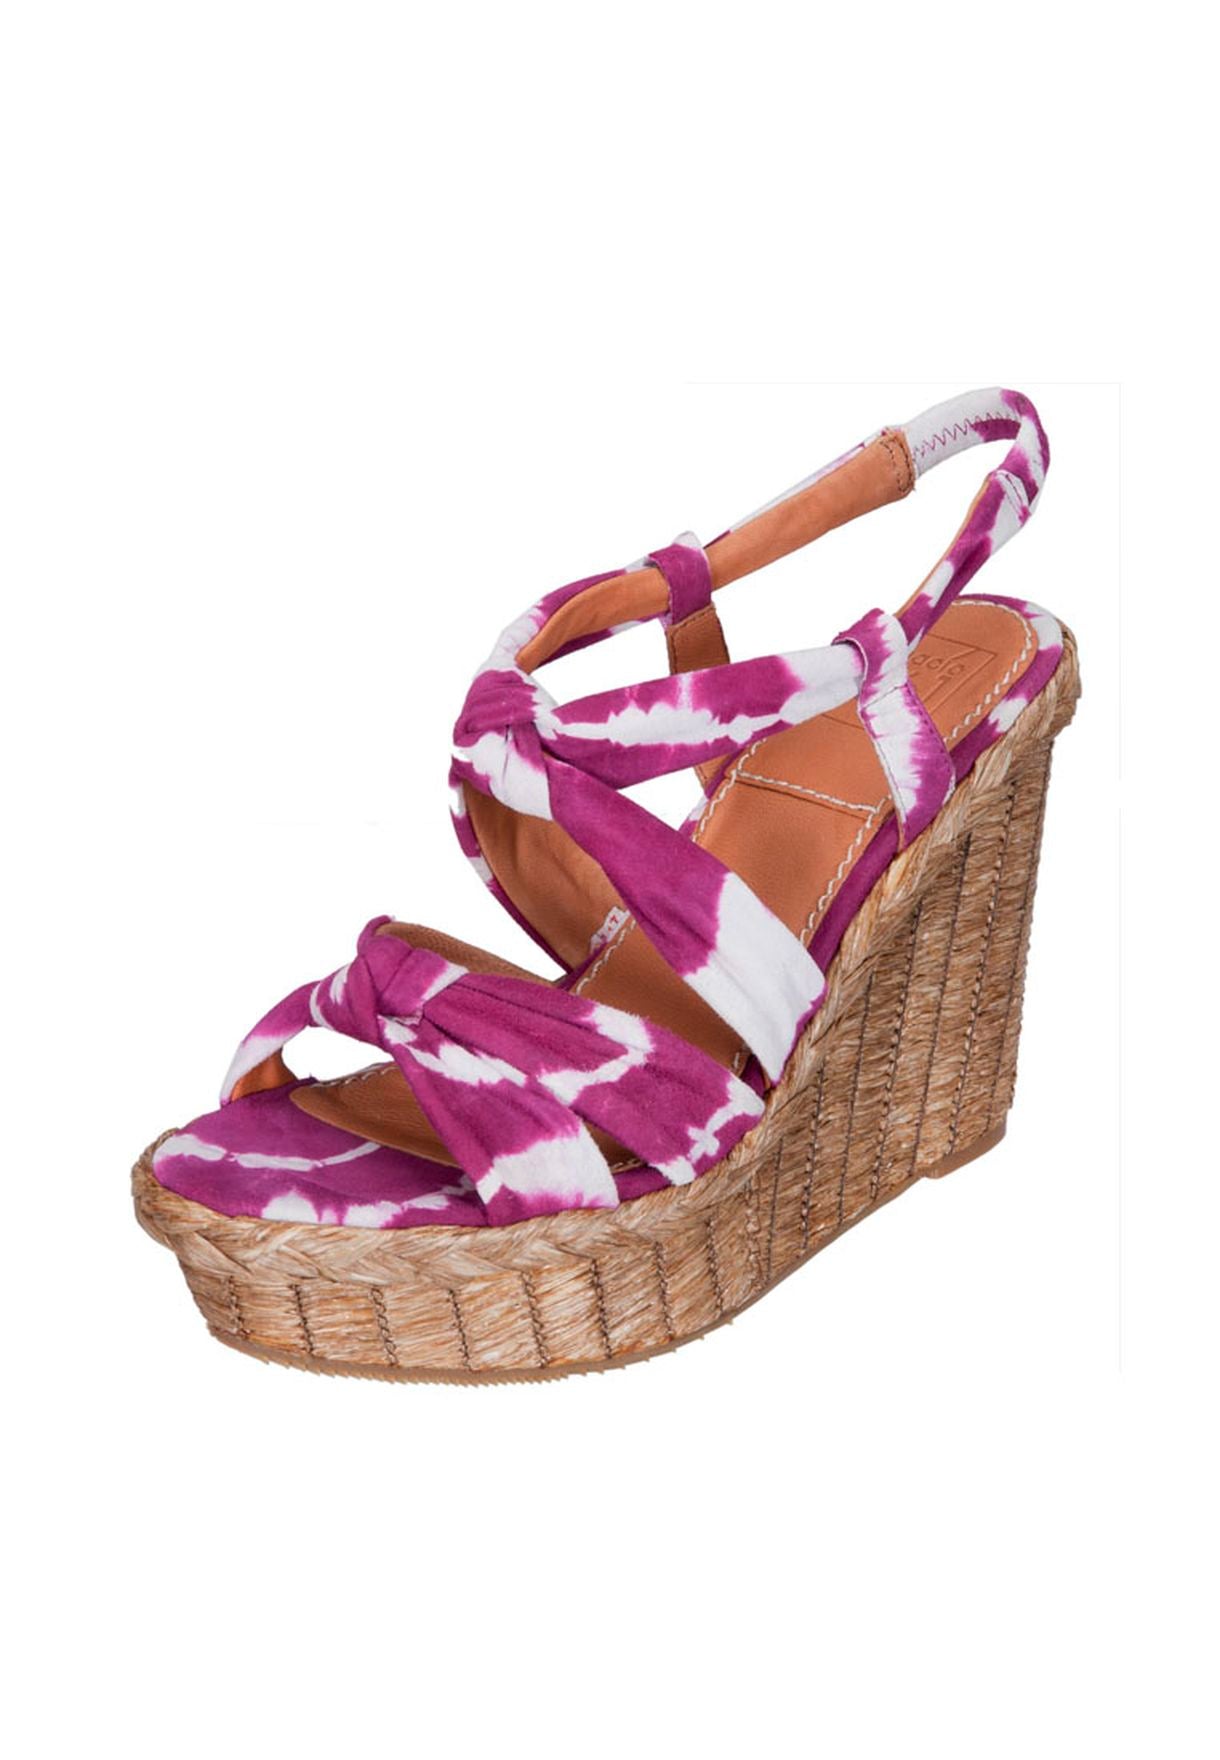 Women's Bacio61 Bacoli Wedge Sandal